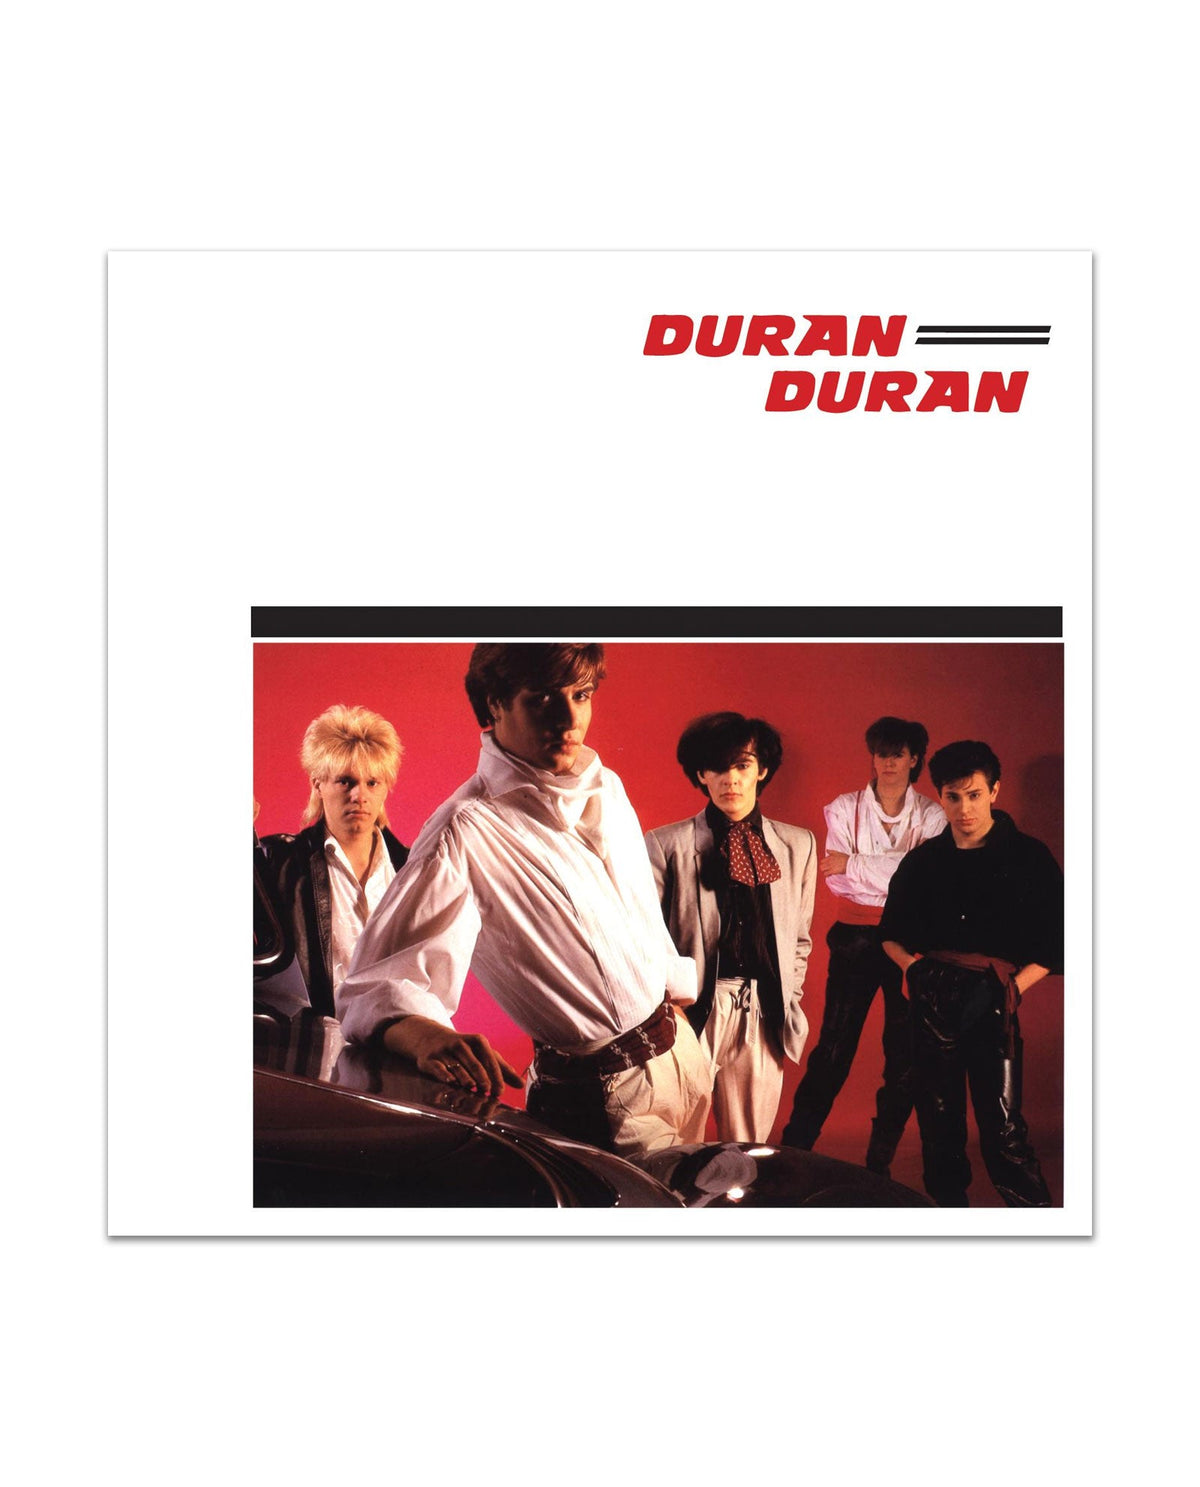 Duran Duran - CD "Duran Duran" - D2fy · Rocktud - D2fy